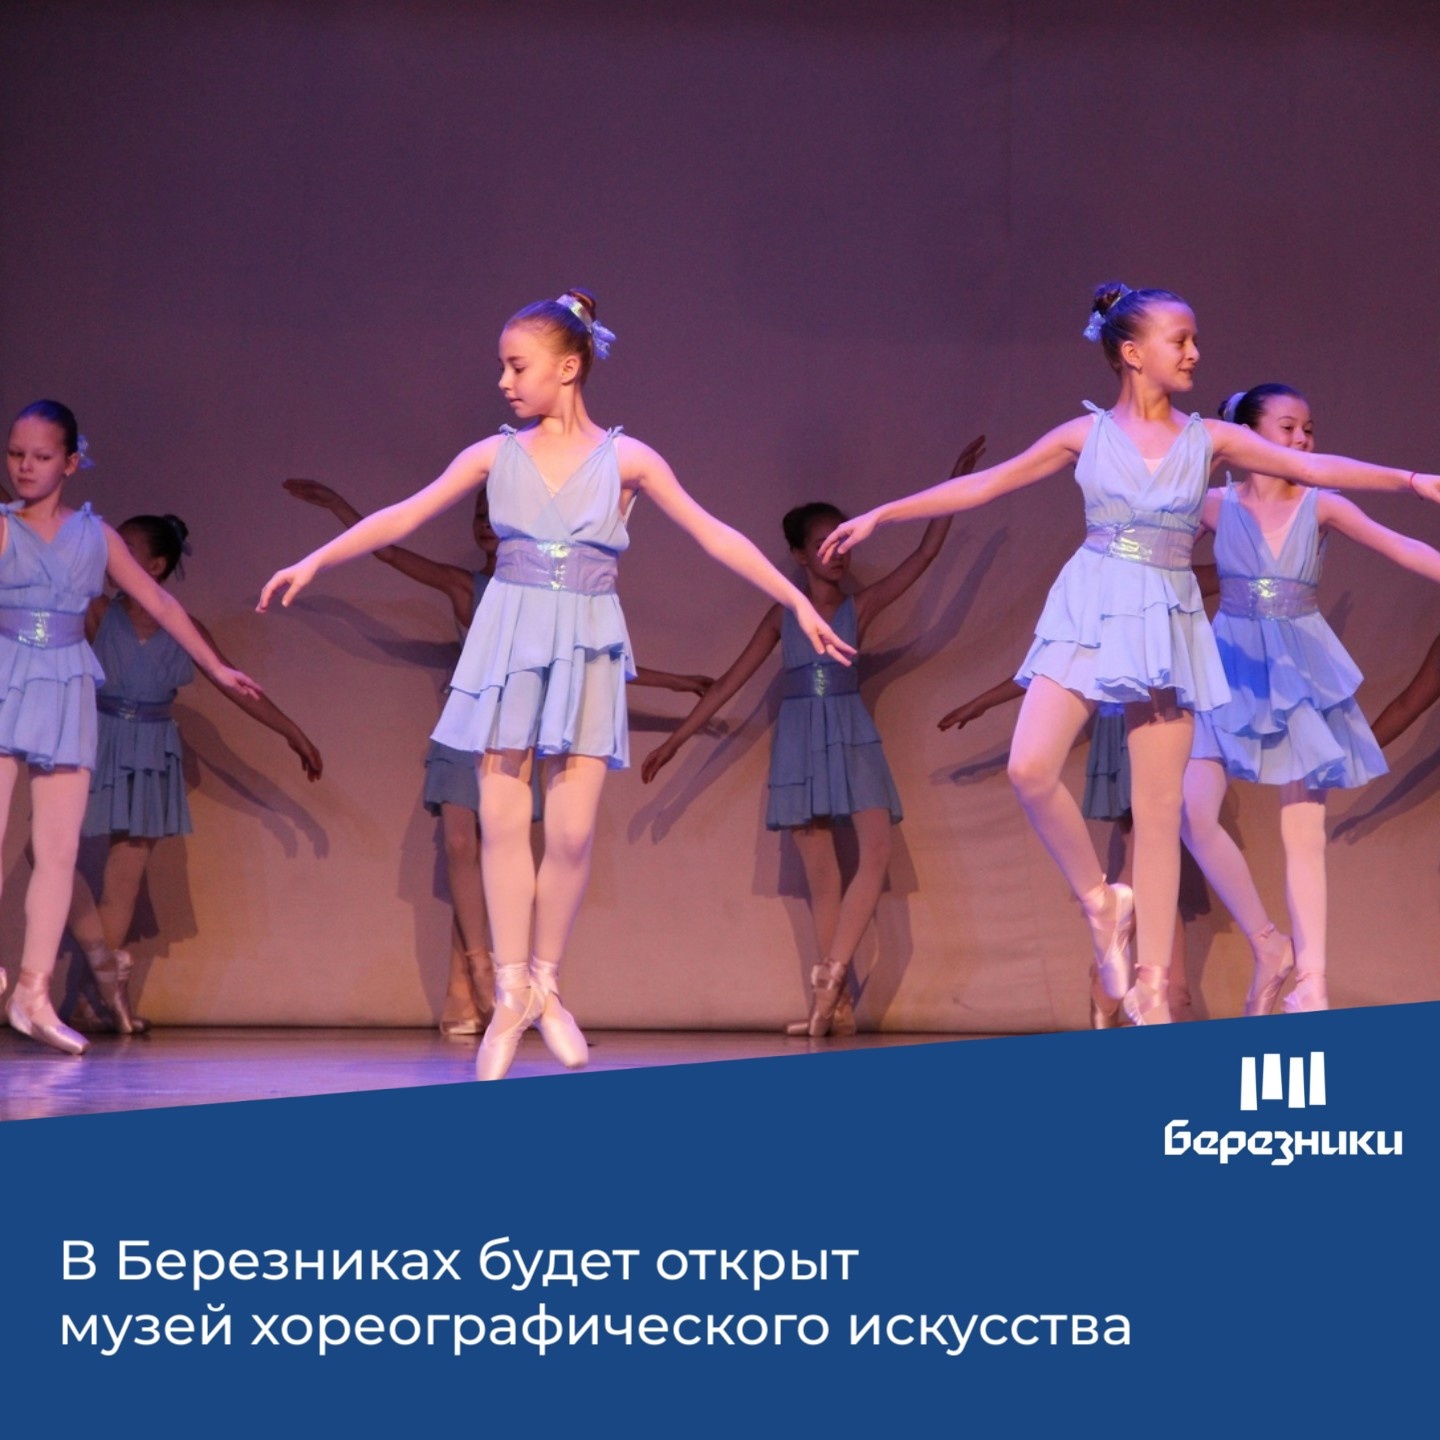 В березниковской хореографической школе «Театр балета» скоро появится музей хореографического искусства «Ступени к успеху»